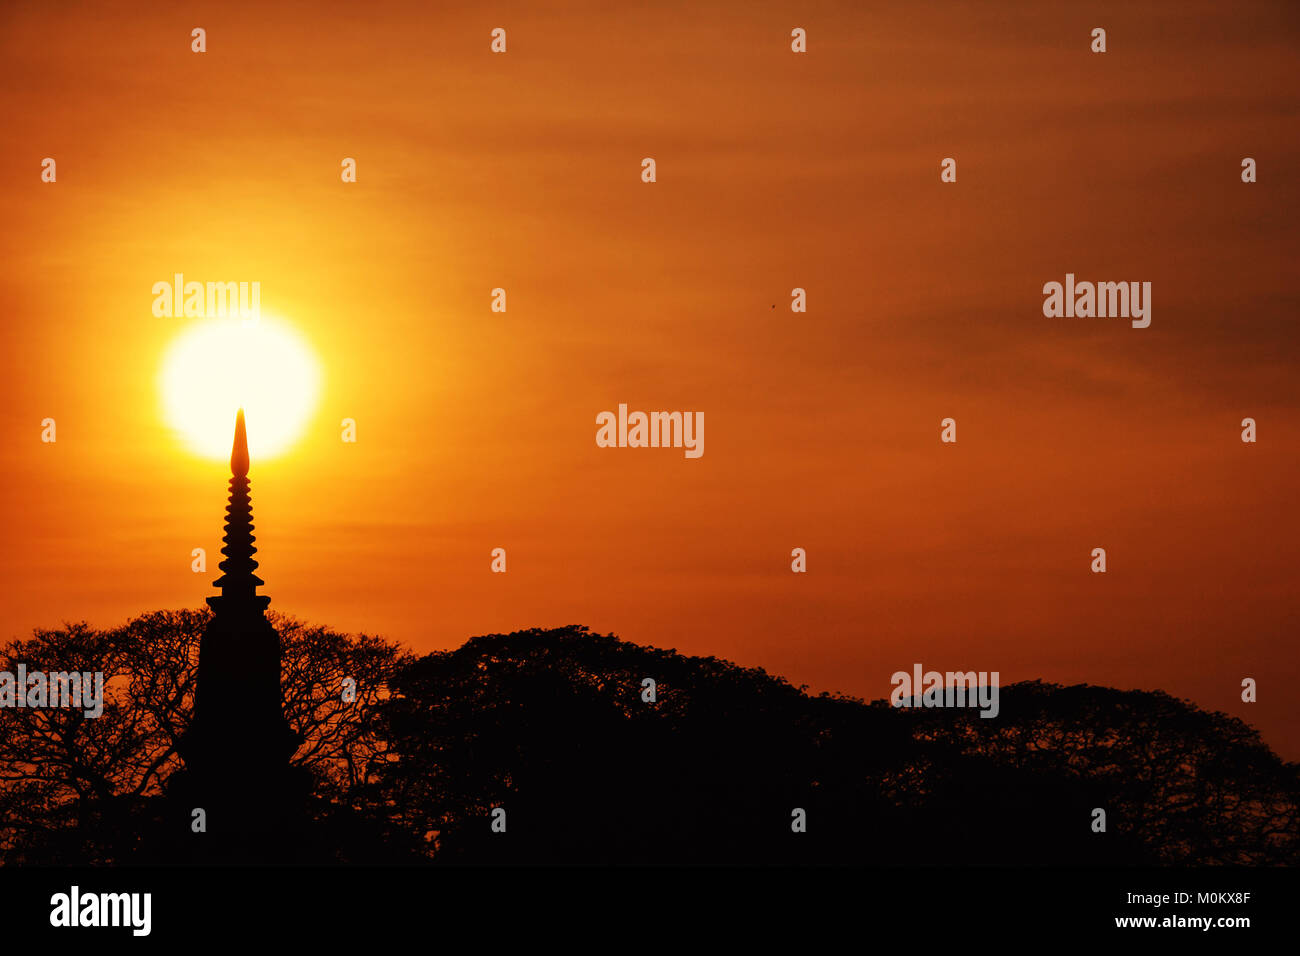 Pagode thaïlandaise silhouette (style ayutthaya) et arbre buisson dans le coucher du soleil, Ayutthaya, Thaïlande. vintage style photographique et cinématographique Banque D'Images